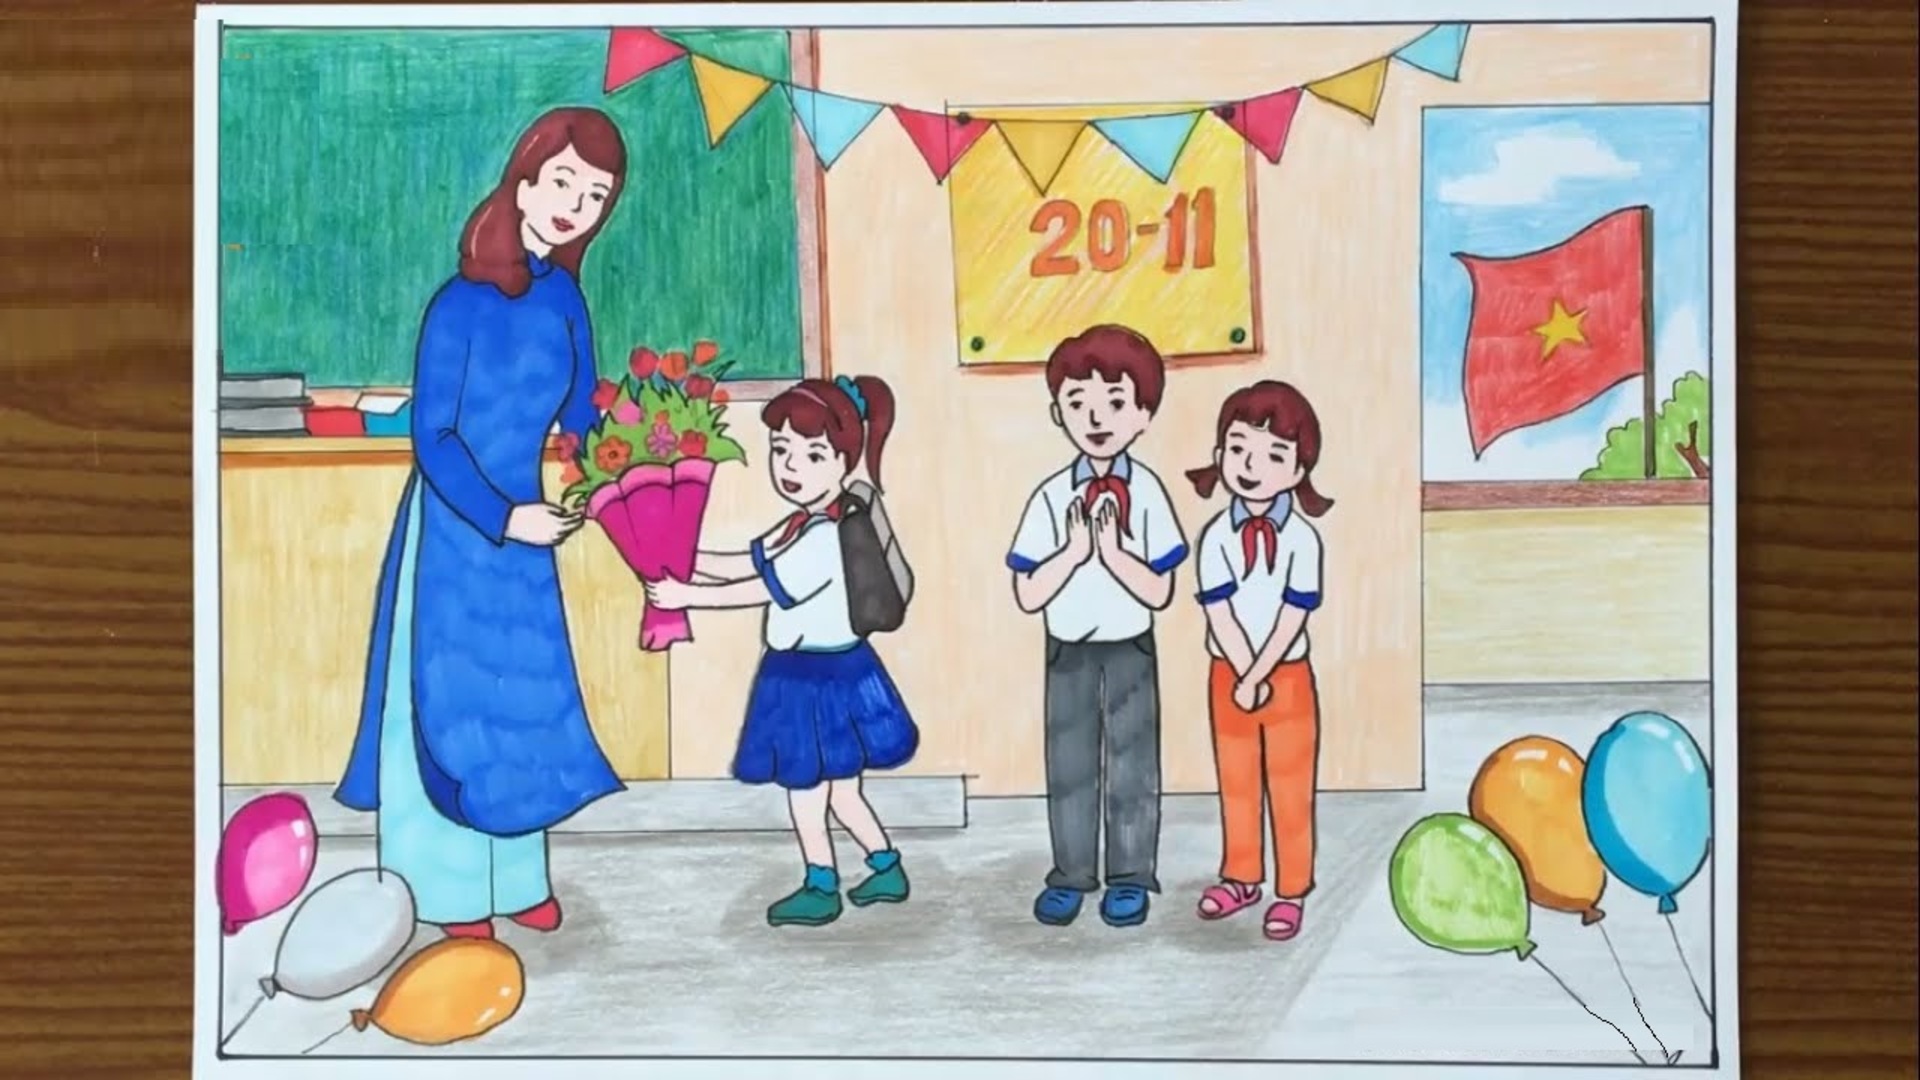 VẼ TRANH 20 THÁNG 11 ĐƠN GIẢN Ý NGHĨAI Vẽ tranh Nhà giáo Việt Nam 2011 II  Ong Mật Mỹ Thuật 84  YouTube